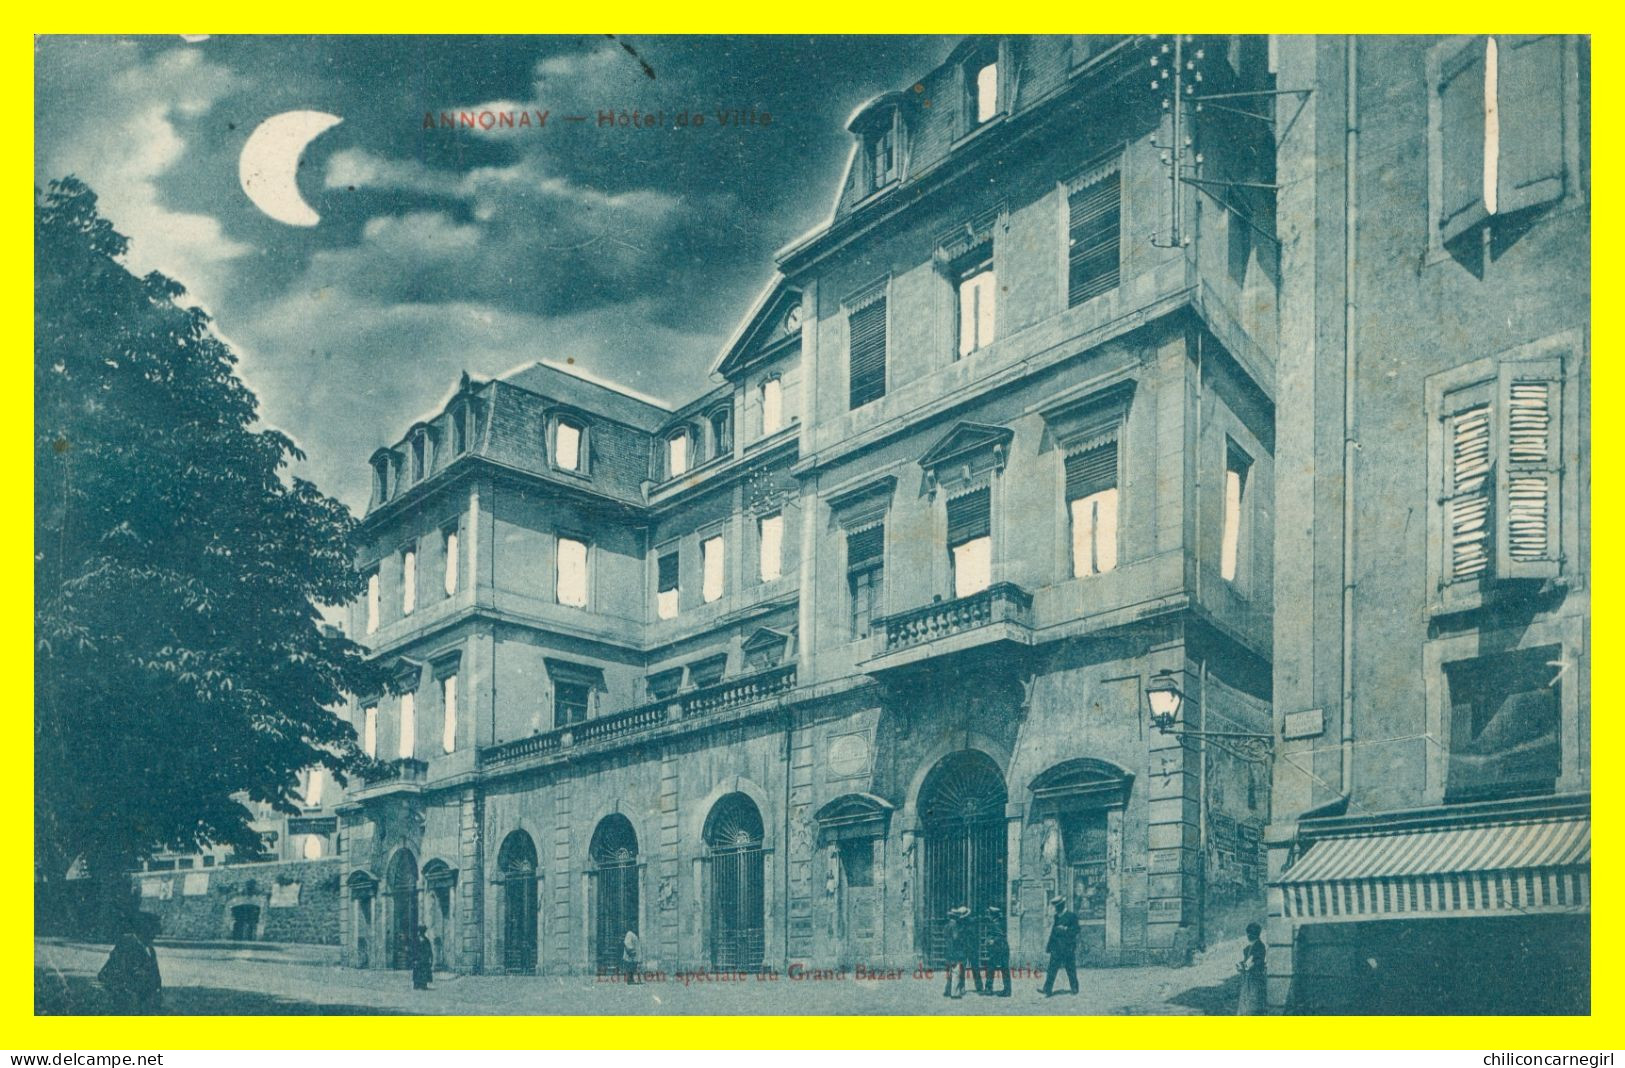 * ANNONAY - Hôtel De Ville - Clair De Lune - Animée - Edit. Grand Bazar - 1908 - Annonay